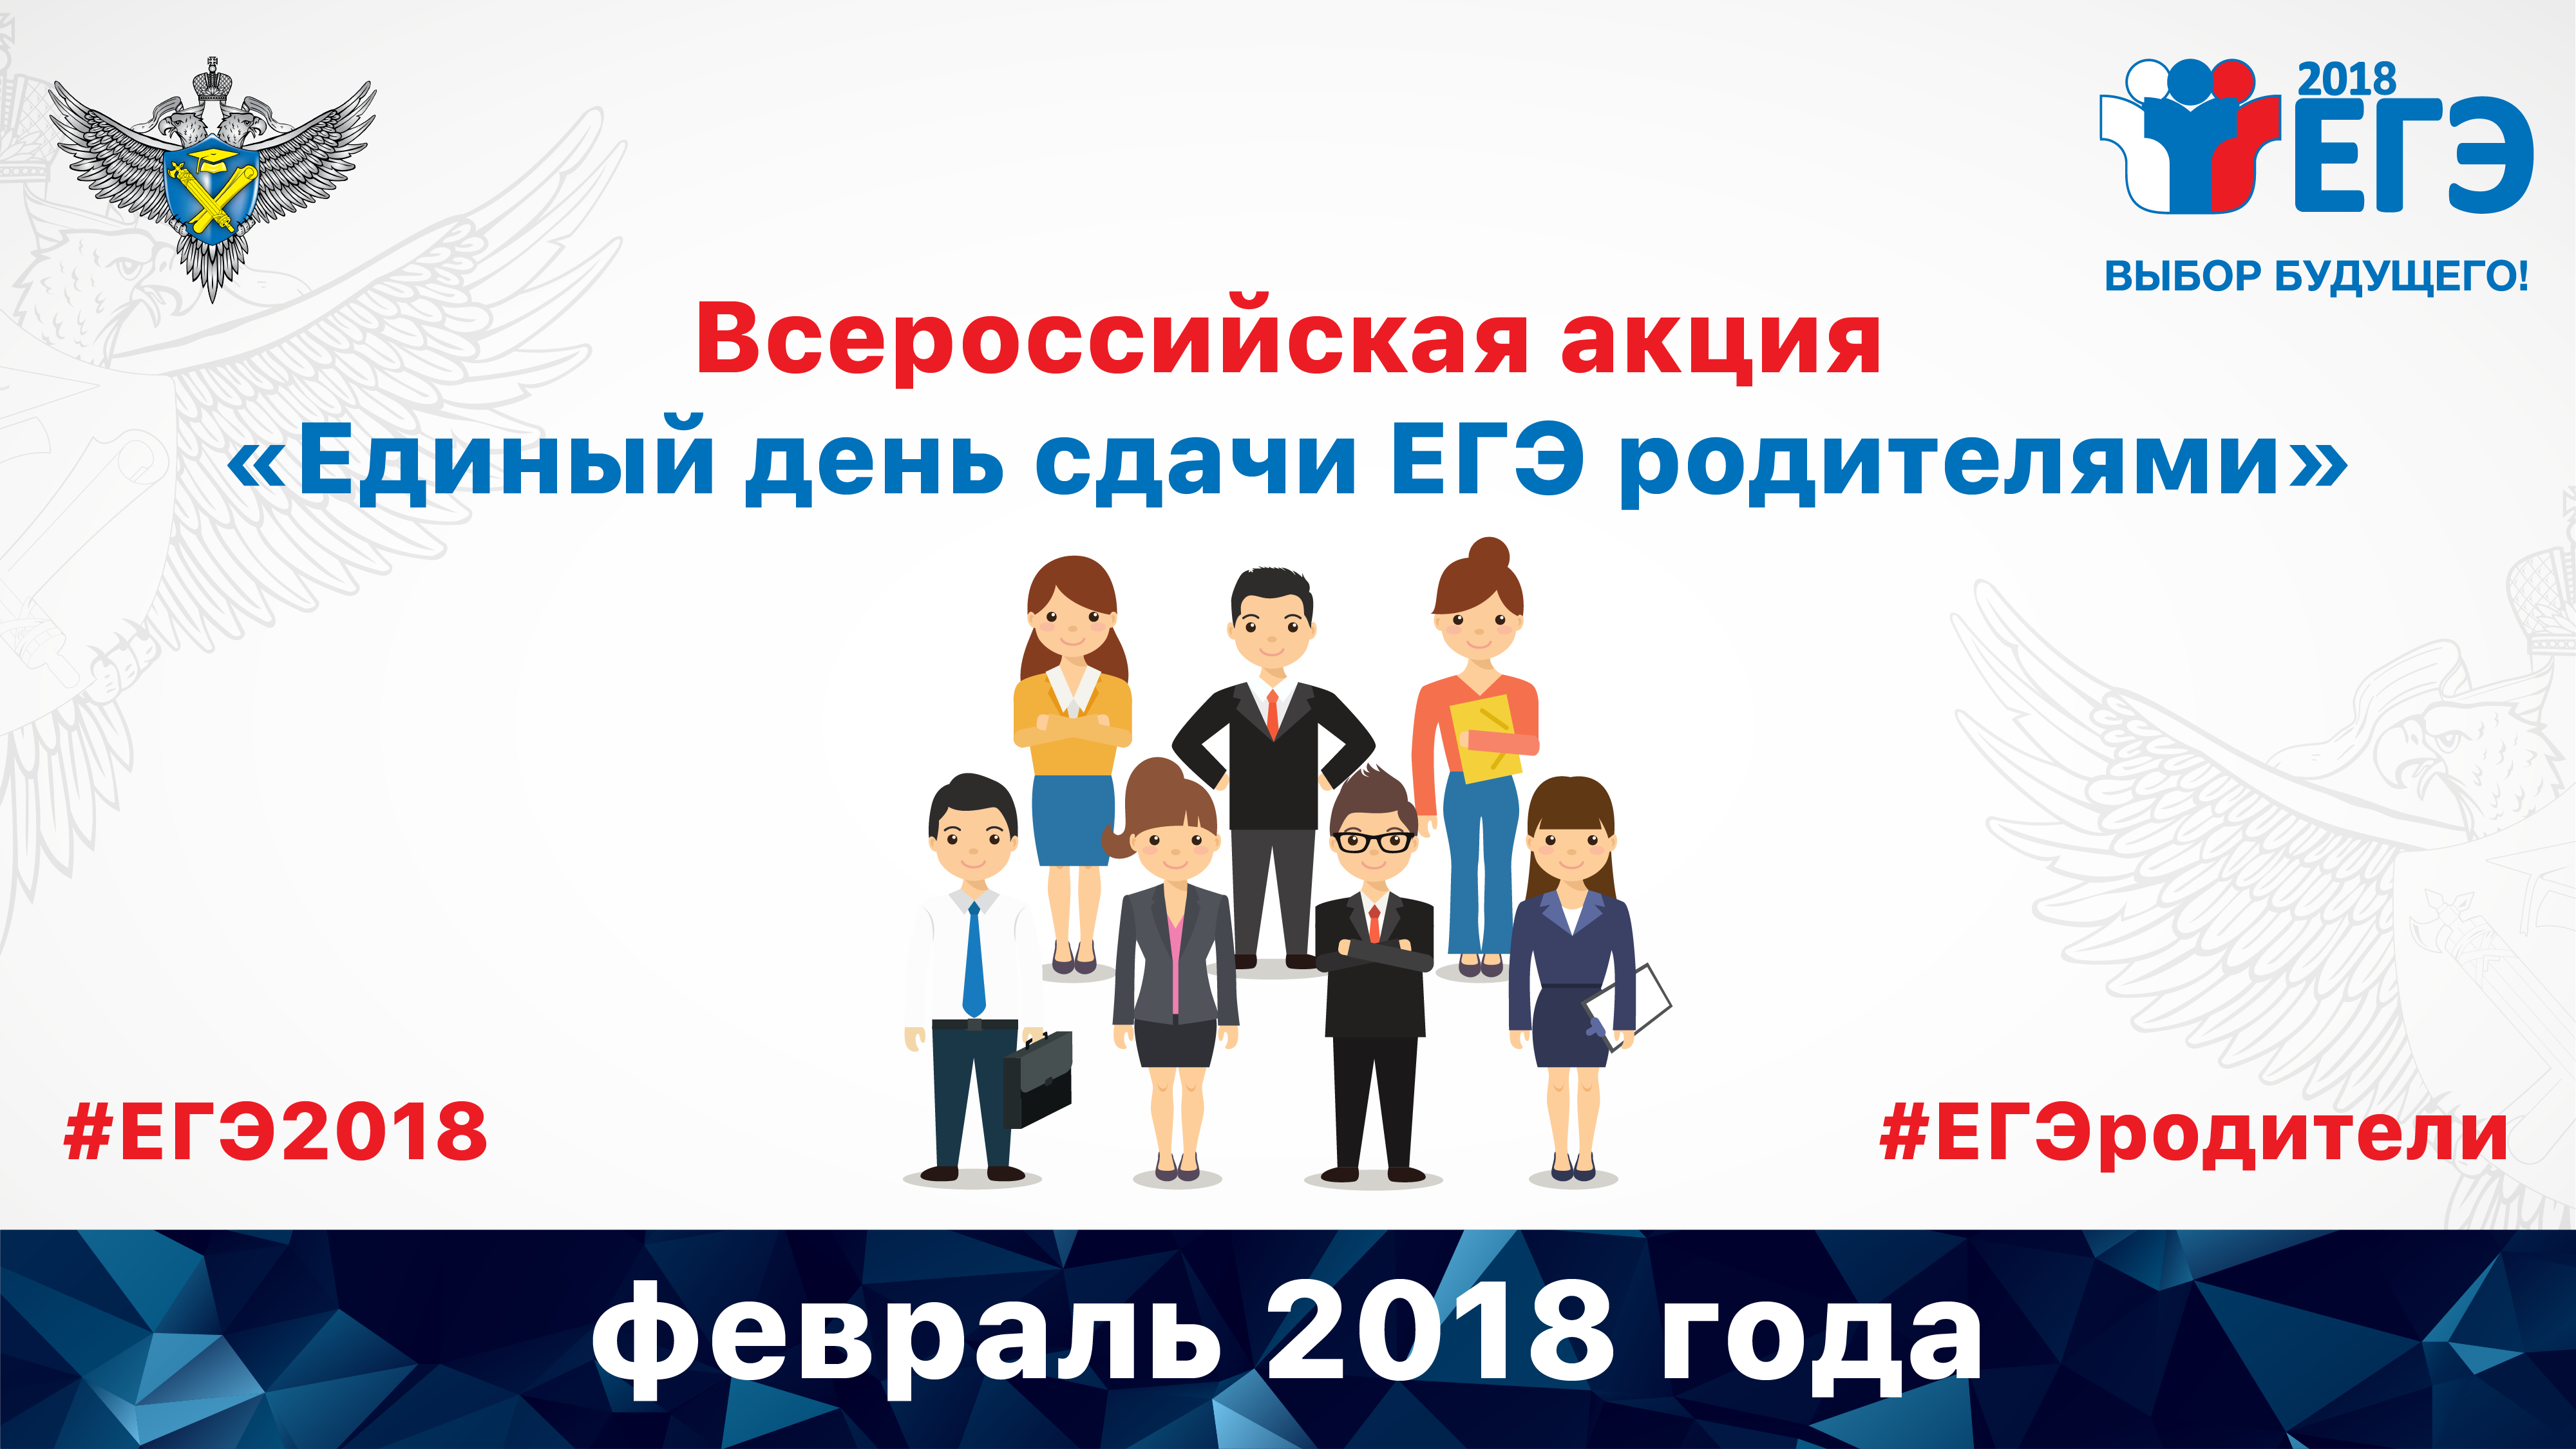 27 февраля в Кемеровской области пройдет Всероссийская акция «Единый день сдачи ЕГЭ родителями»